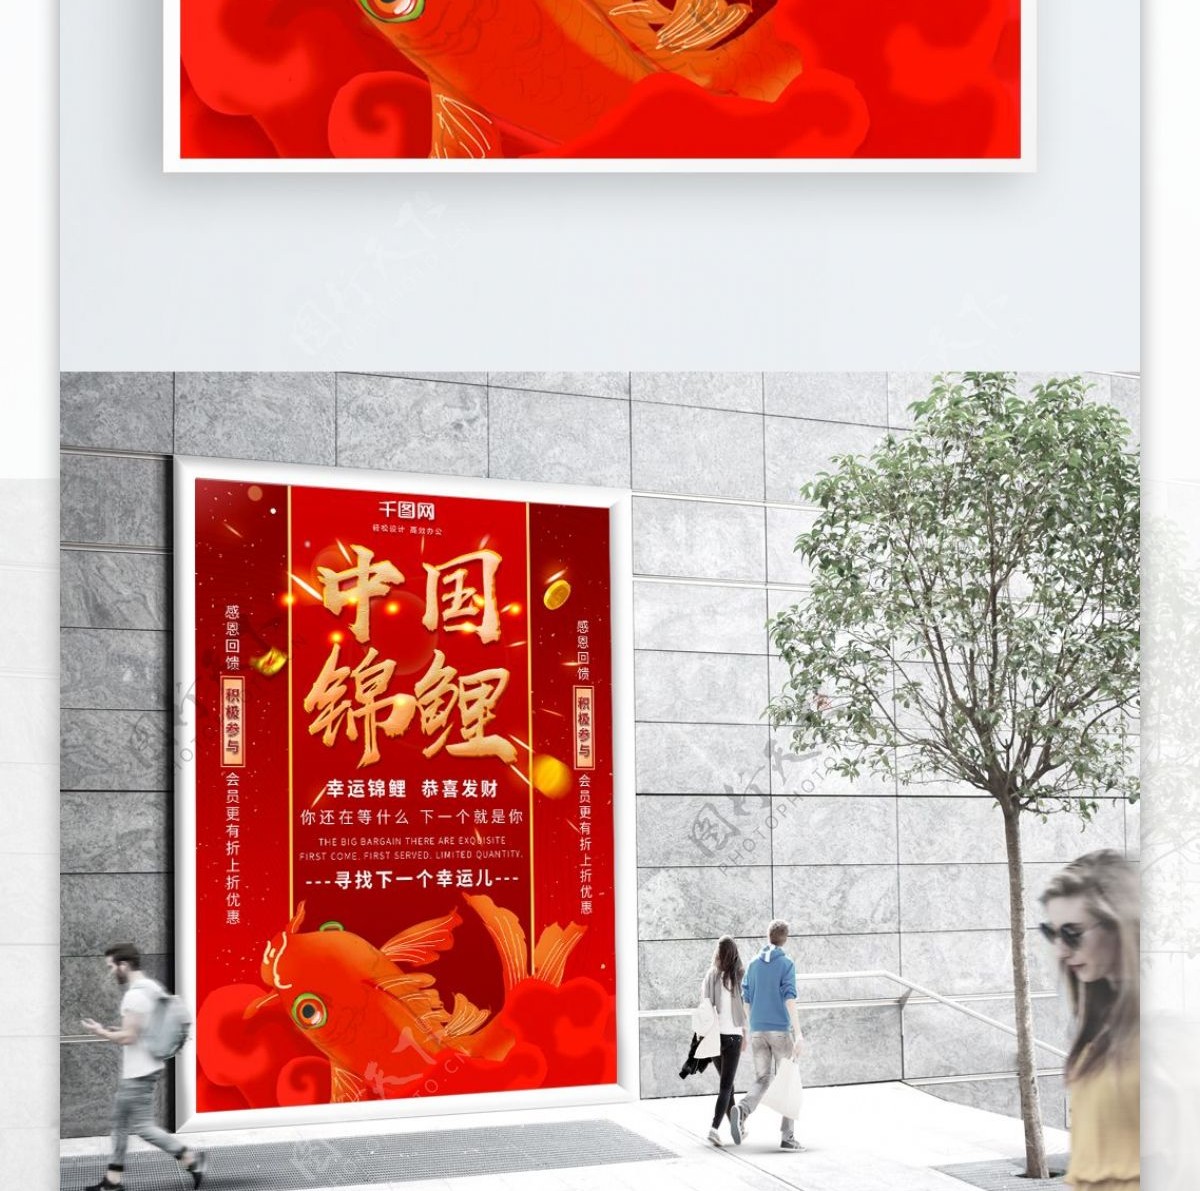 红色喜庆中国风原创中国锦鲤商业宣传海报